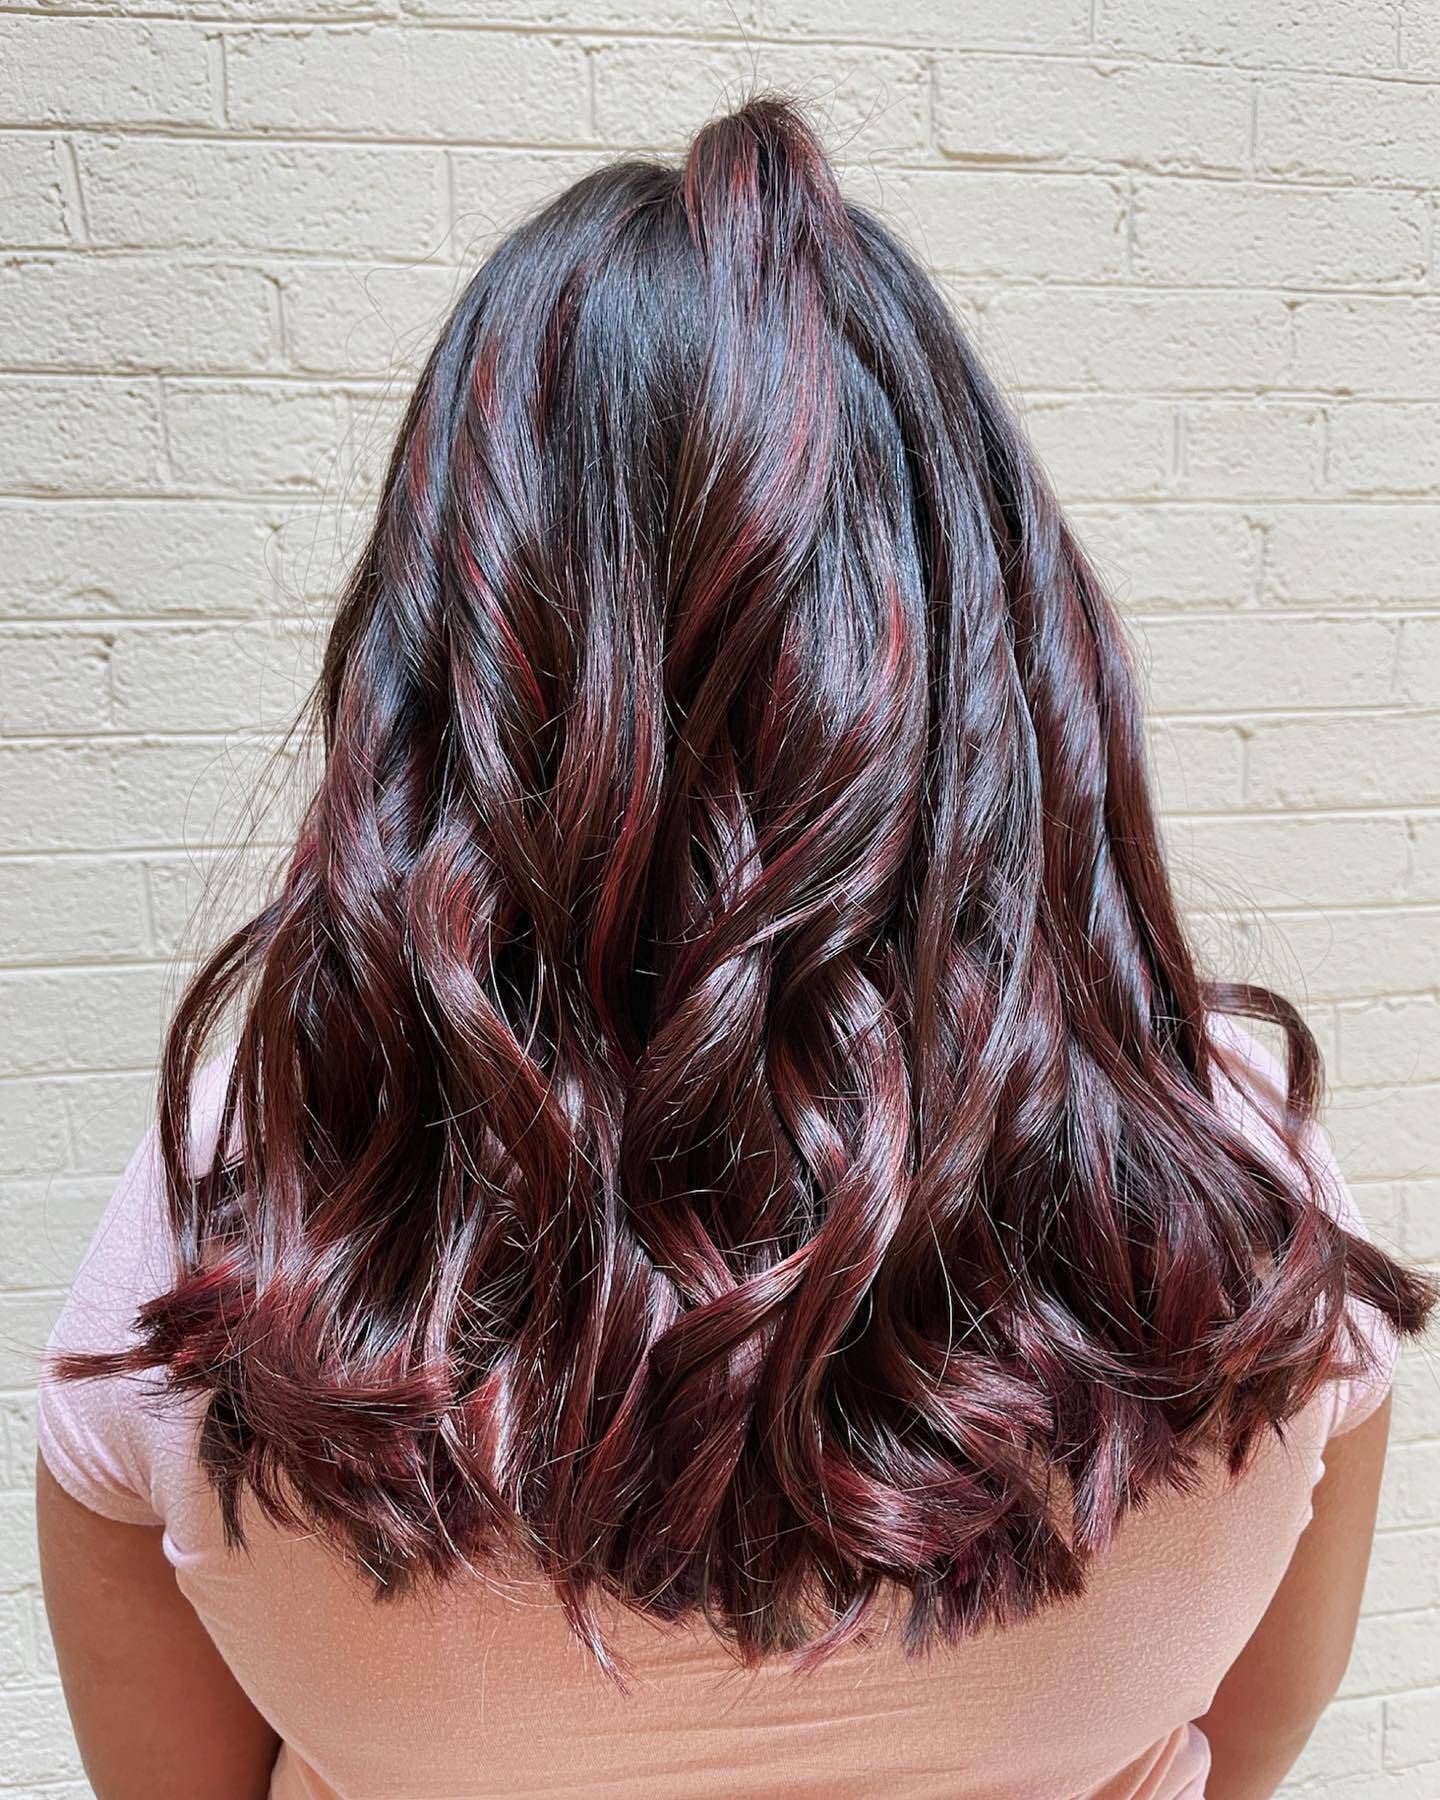 Burgundy hair color 46 burgundy hair color | burgundy hair color for women | burgundy hair color highlights Burgundy Hair Color